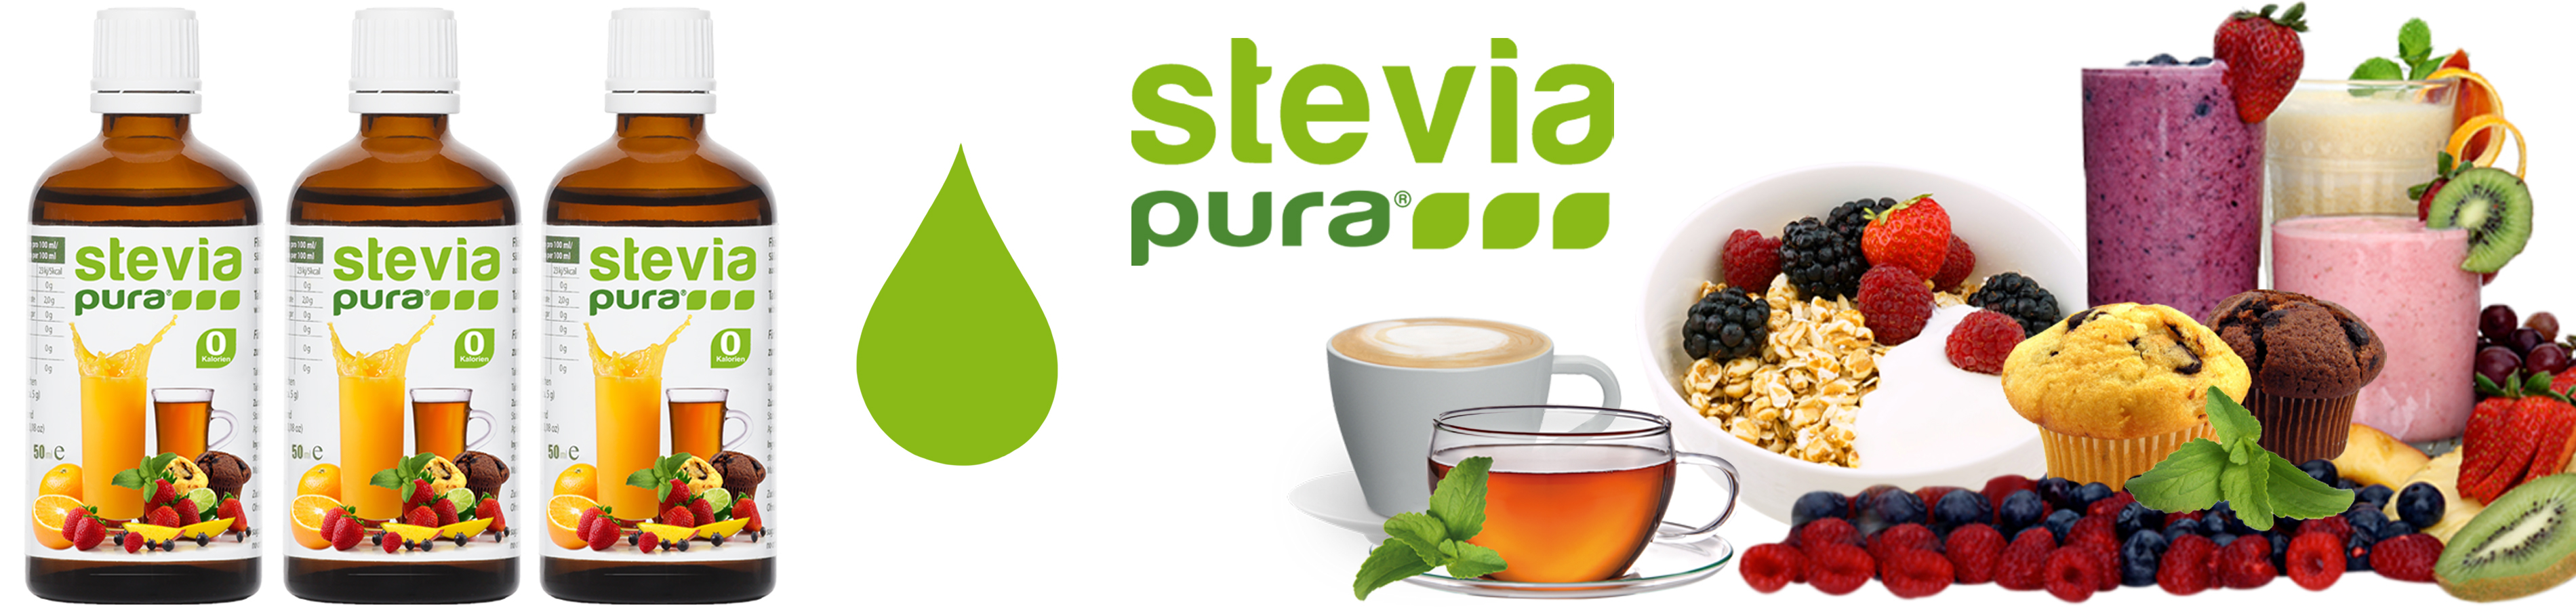 geeuwen sirene Vaderlijk Stevia Vloeibaar Zoetstof Kopen 3x50ml | Suikervrij | stevia-pura - S